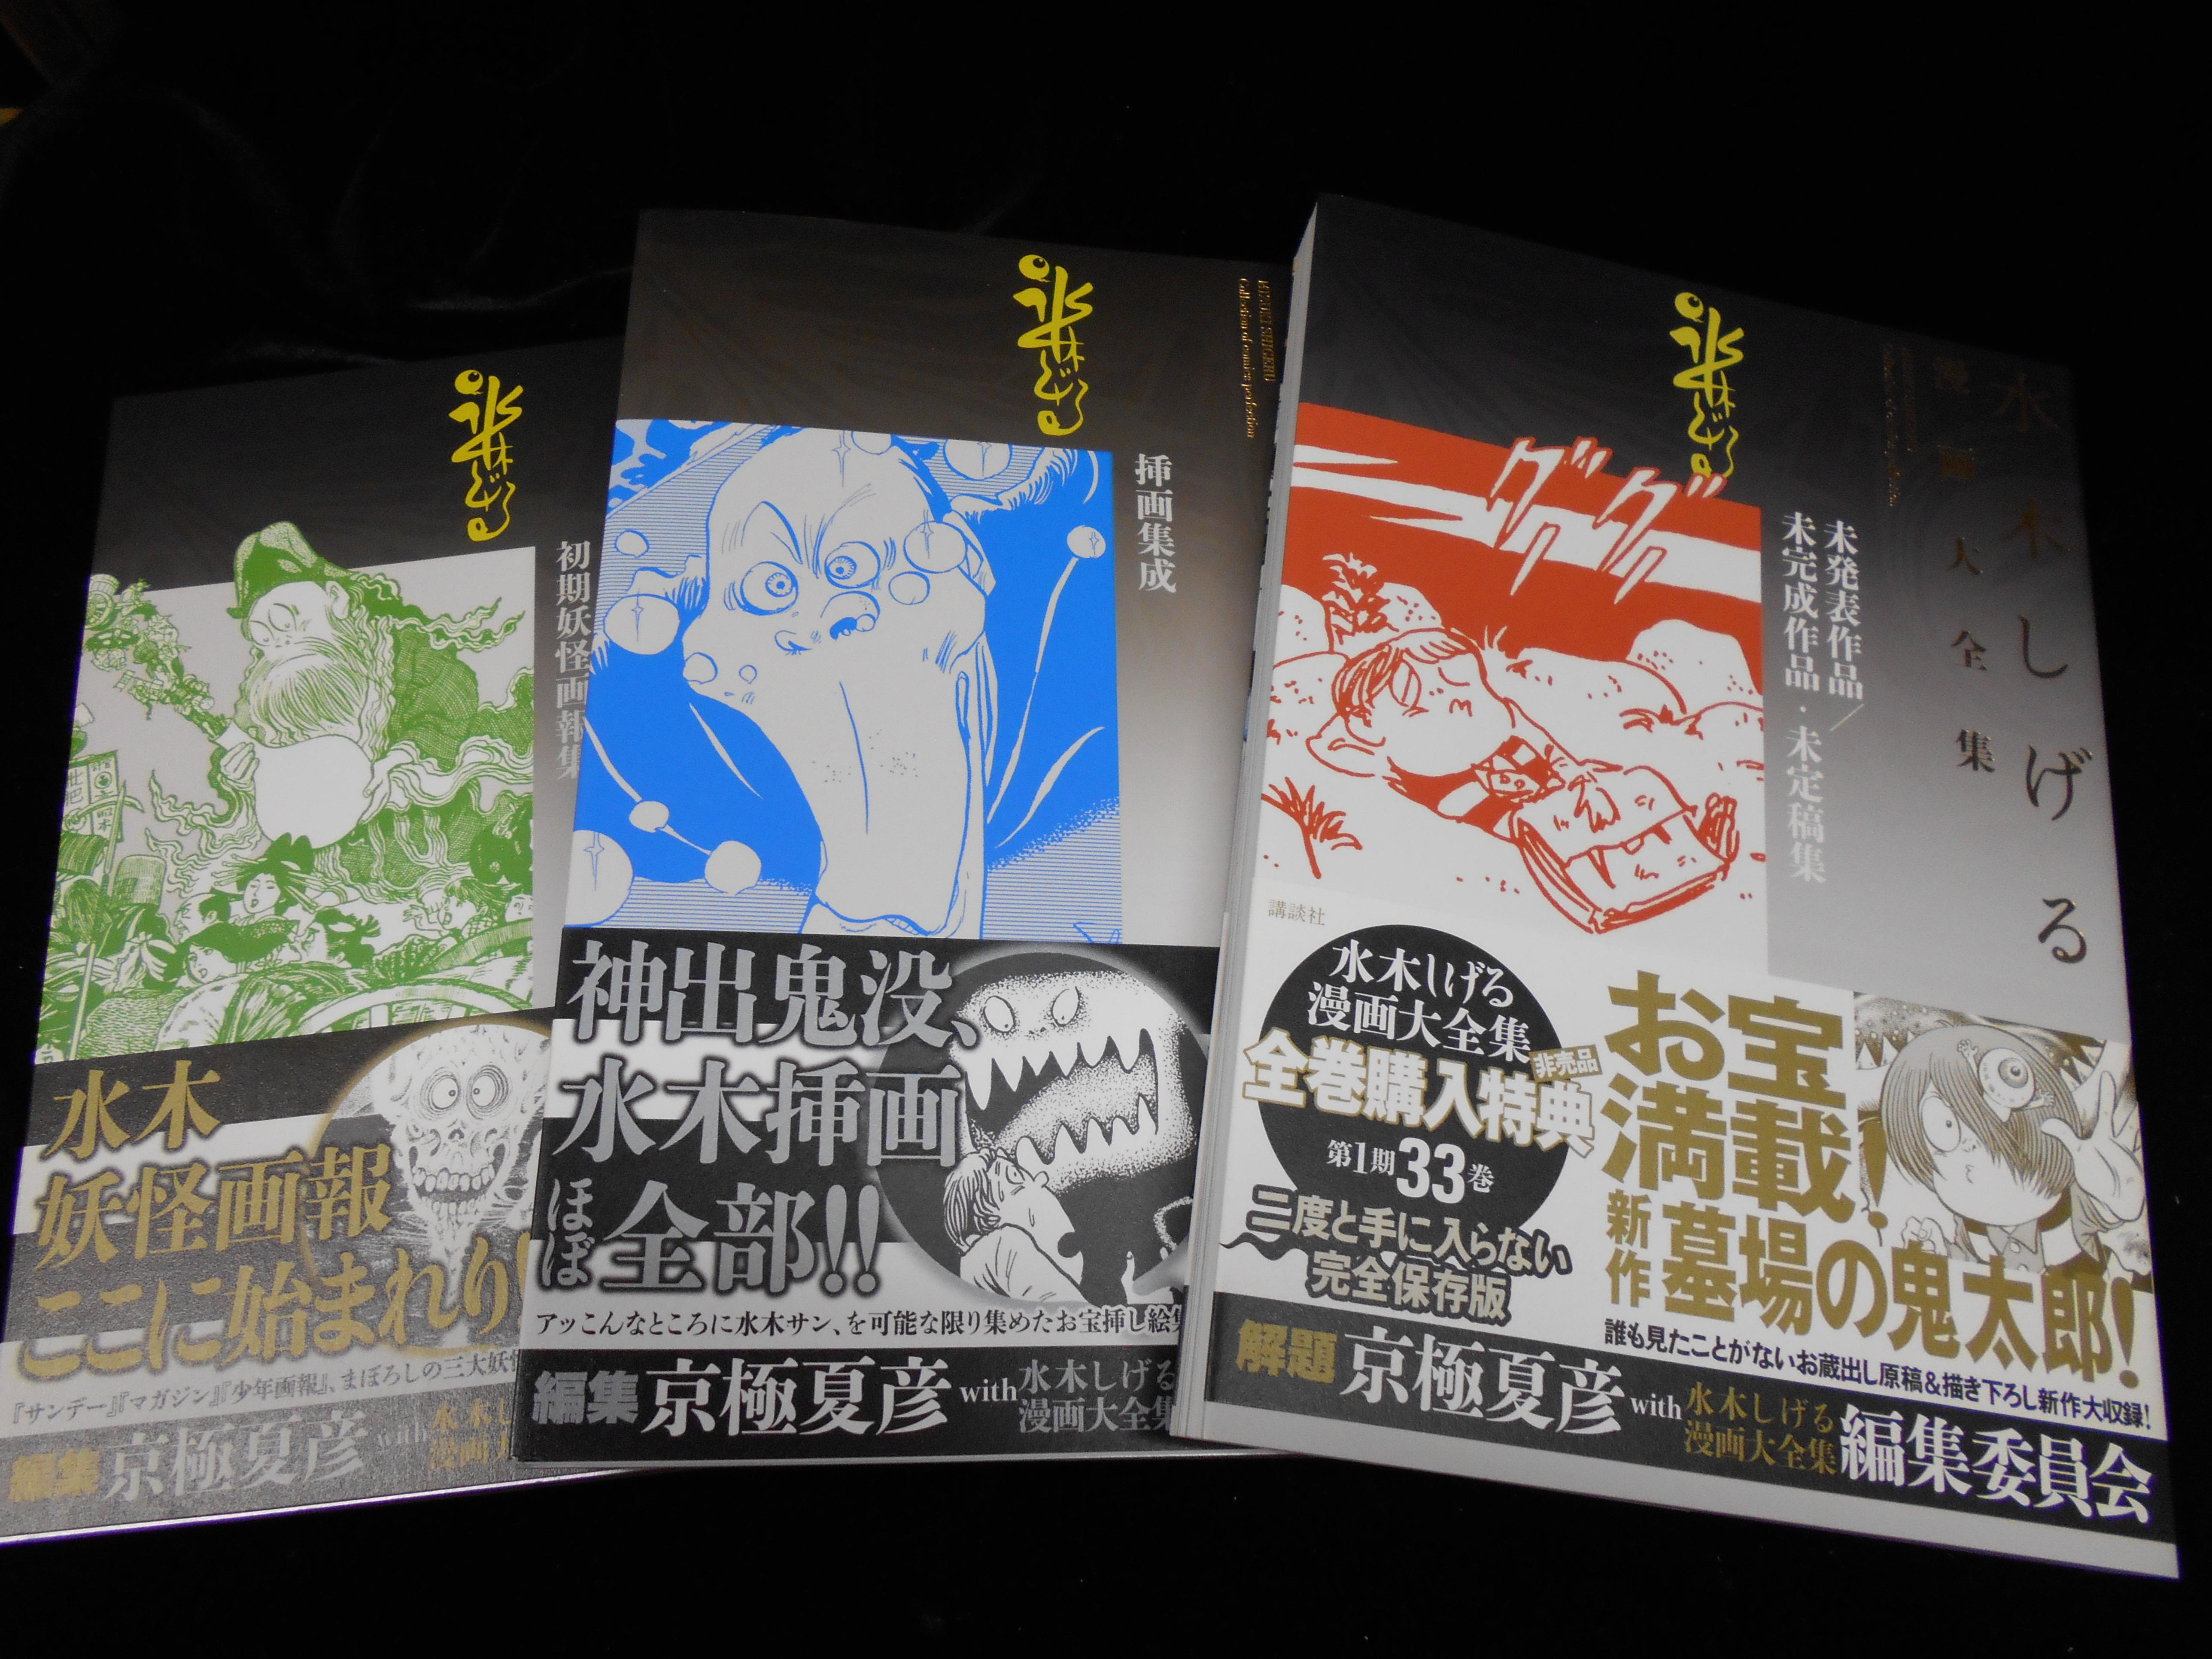 まんだらけ 渋谷店 少年コミック 水木しげる漫画大全集 別巻1 3巻出します